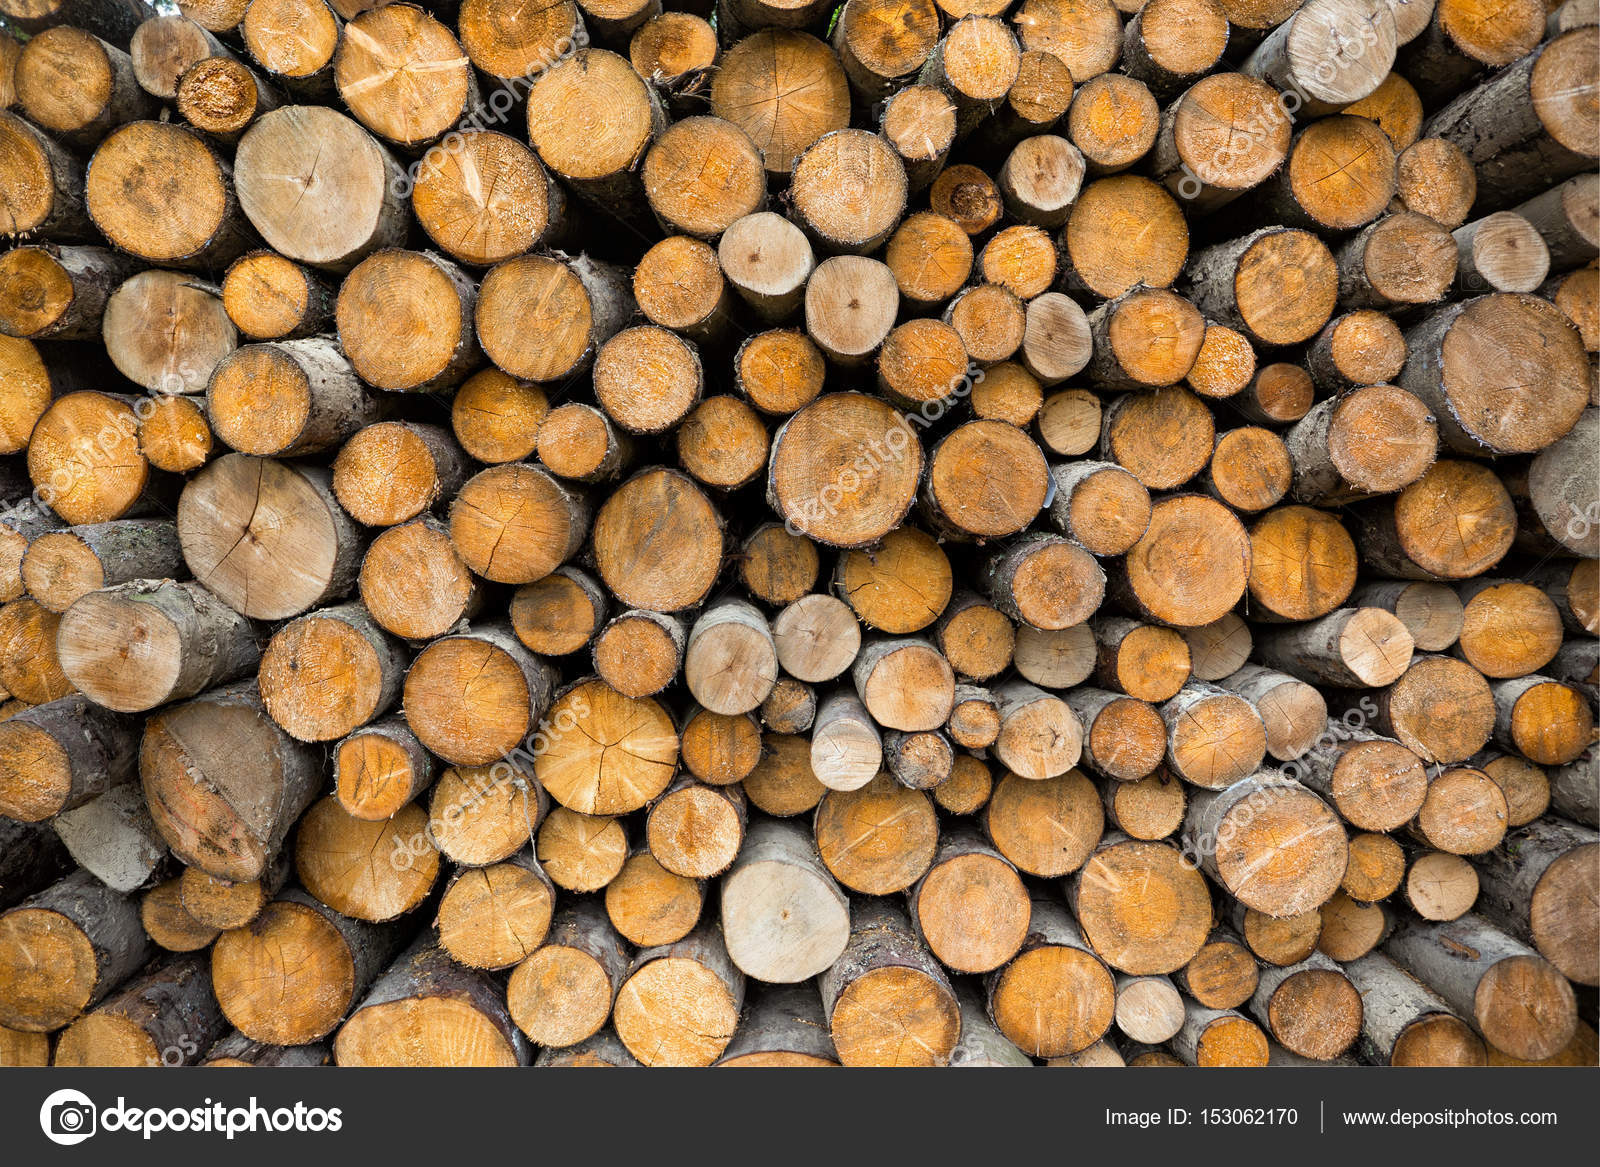 Nền tảng gỗ mang đến một cảm giác ấm áp và gần gũi với thiên nhiên. Hình ảnh về nền tảng gỗ sẽ khiến bạn bị cuốn hút bởi vẻ đẹp tự nhiên và sự đơn giản của chúng.